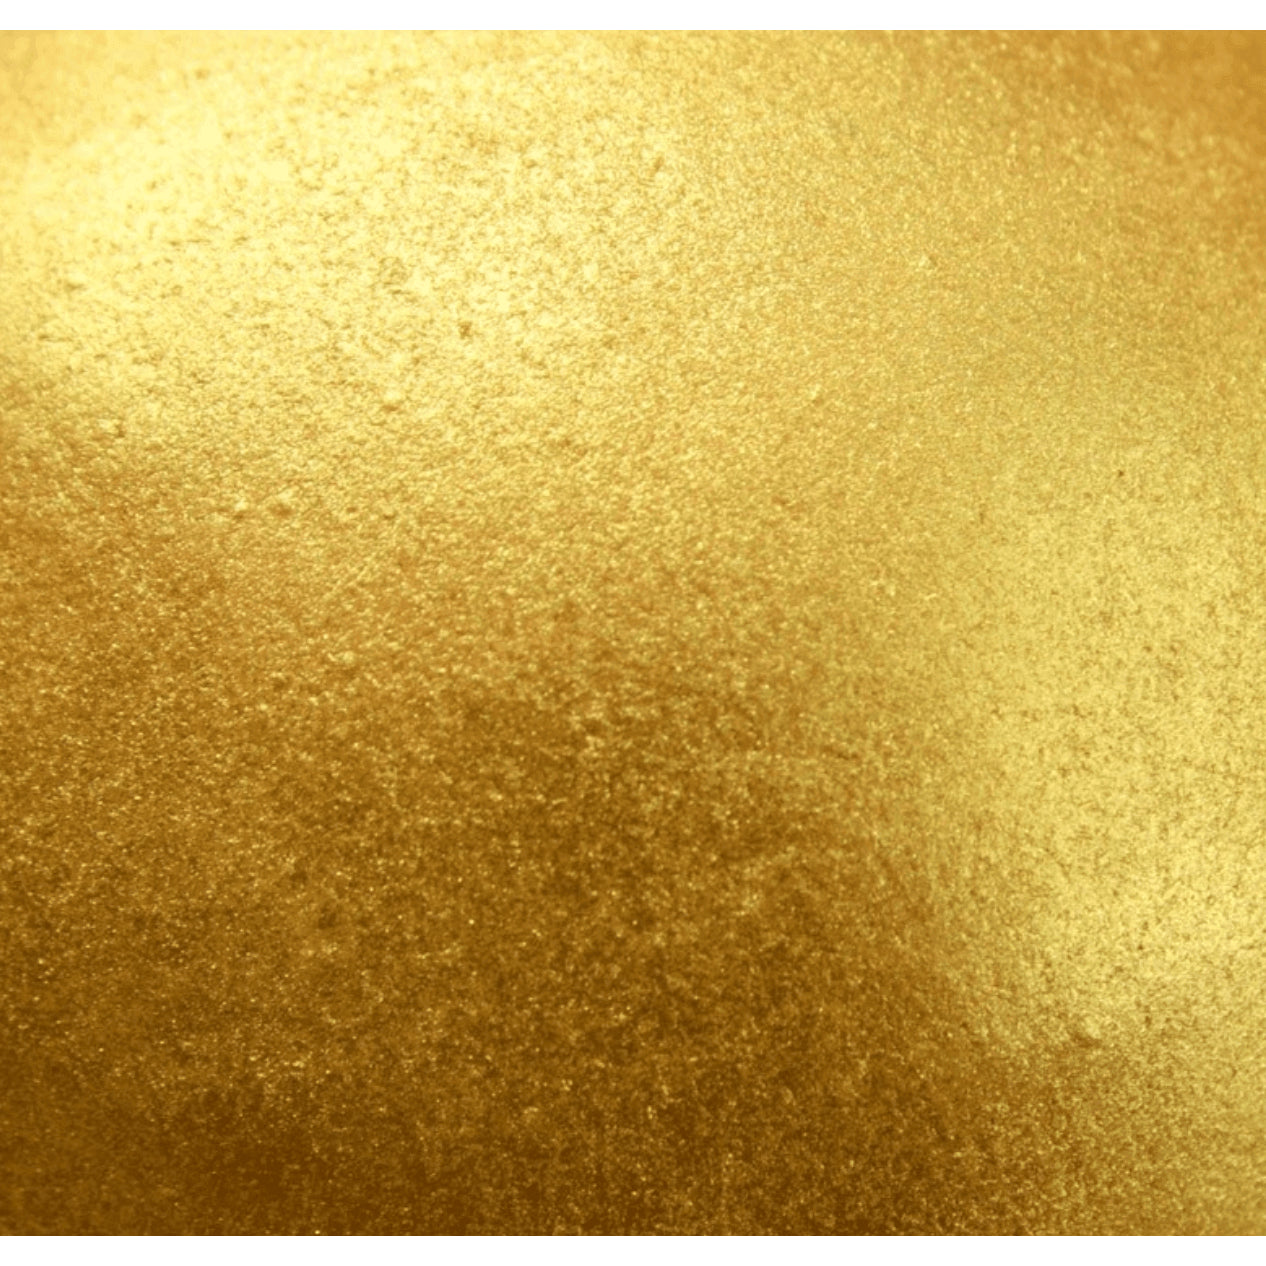 Pulverfärbung – Signature Gold